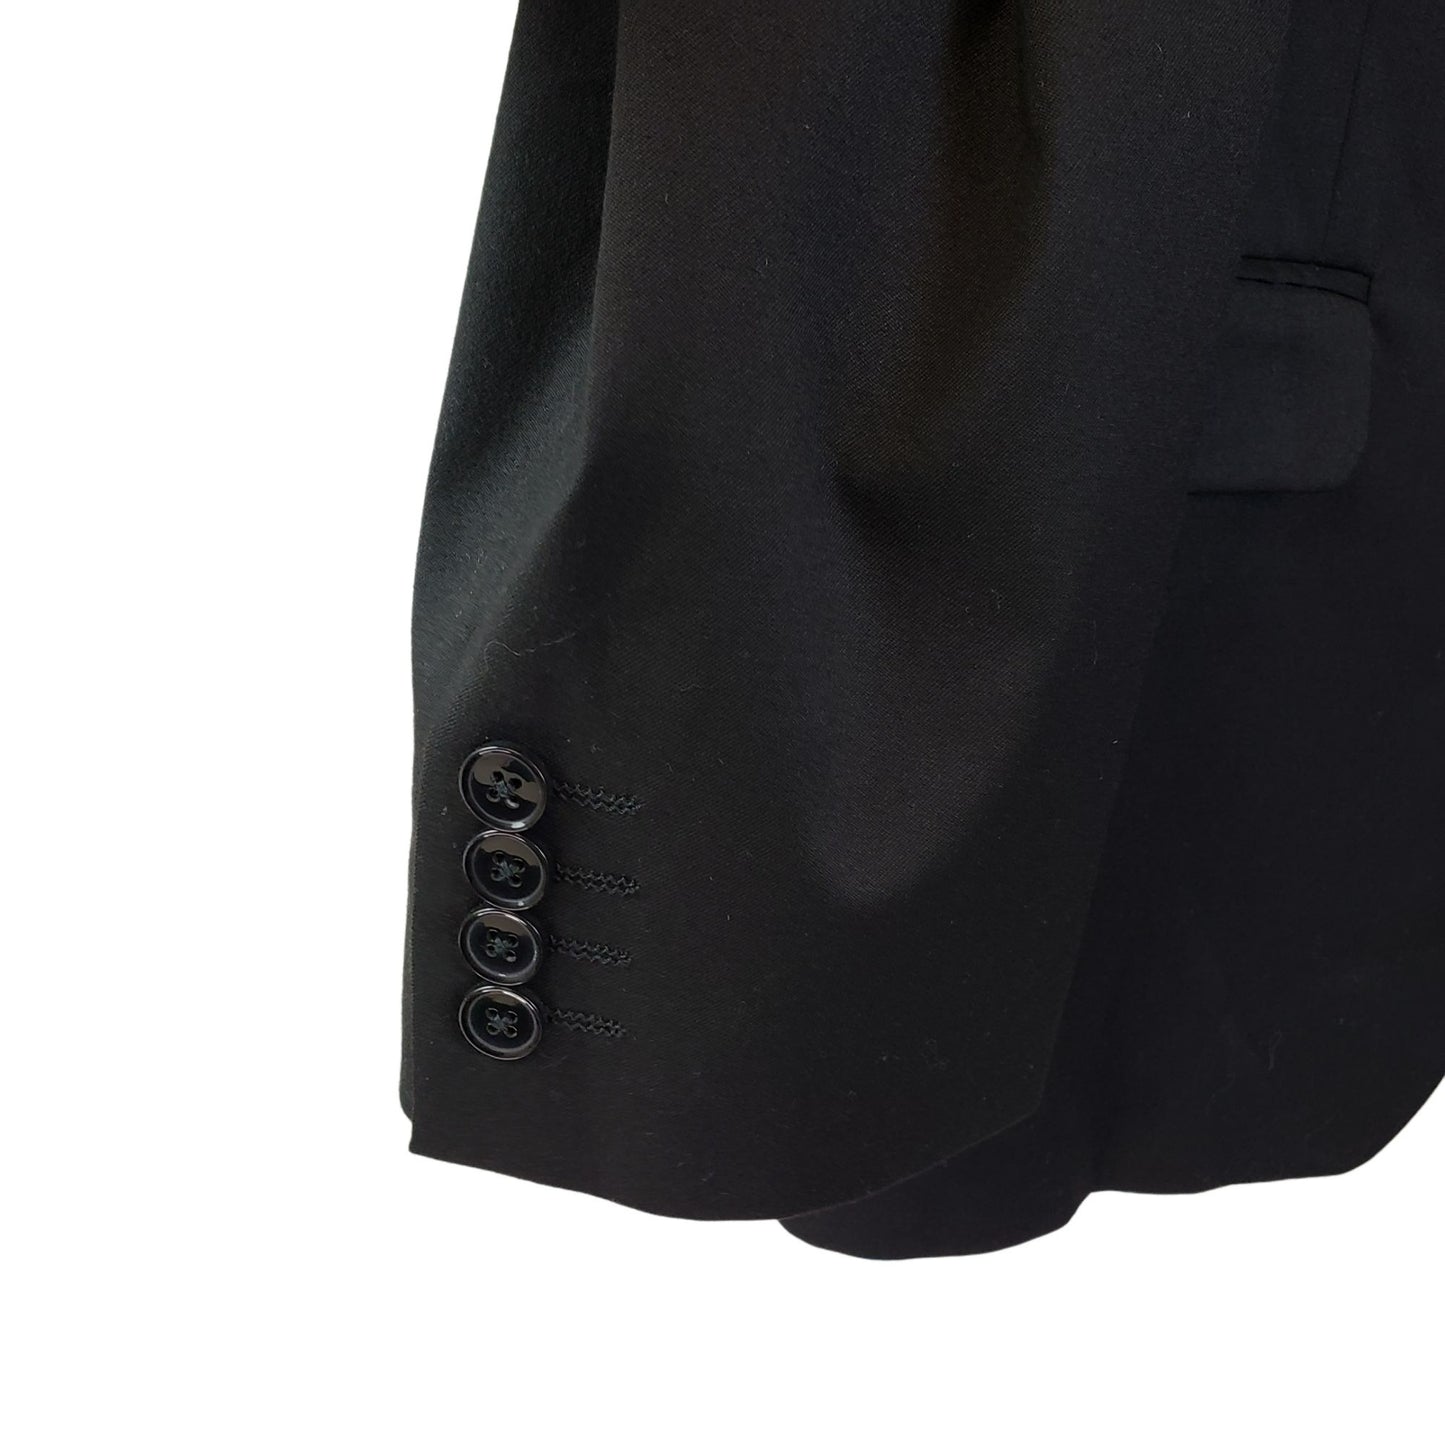 Alfani Slim Fit 2 Button Black Suit Sport Jacket Size 46R